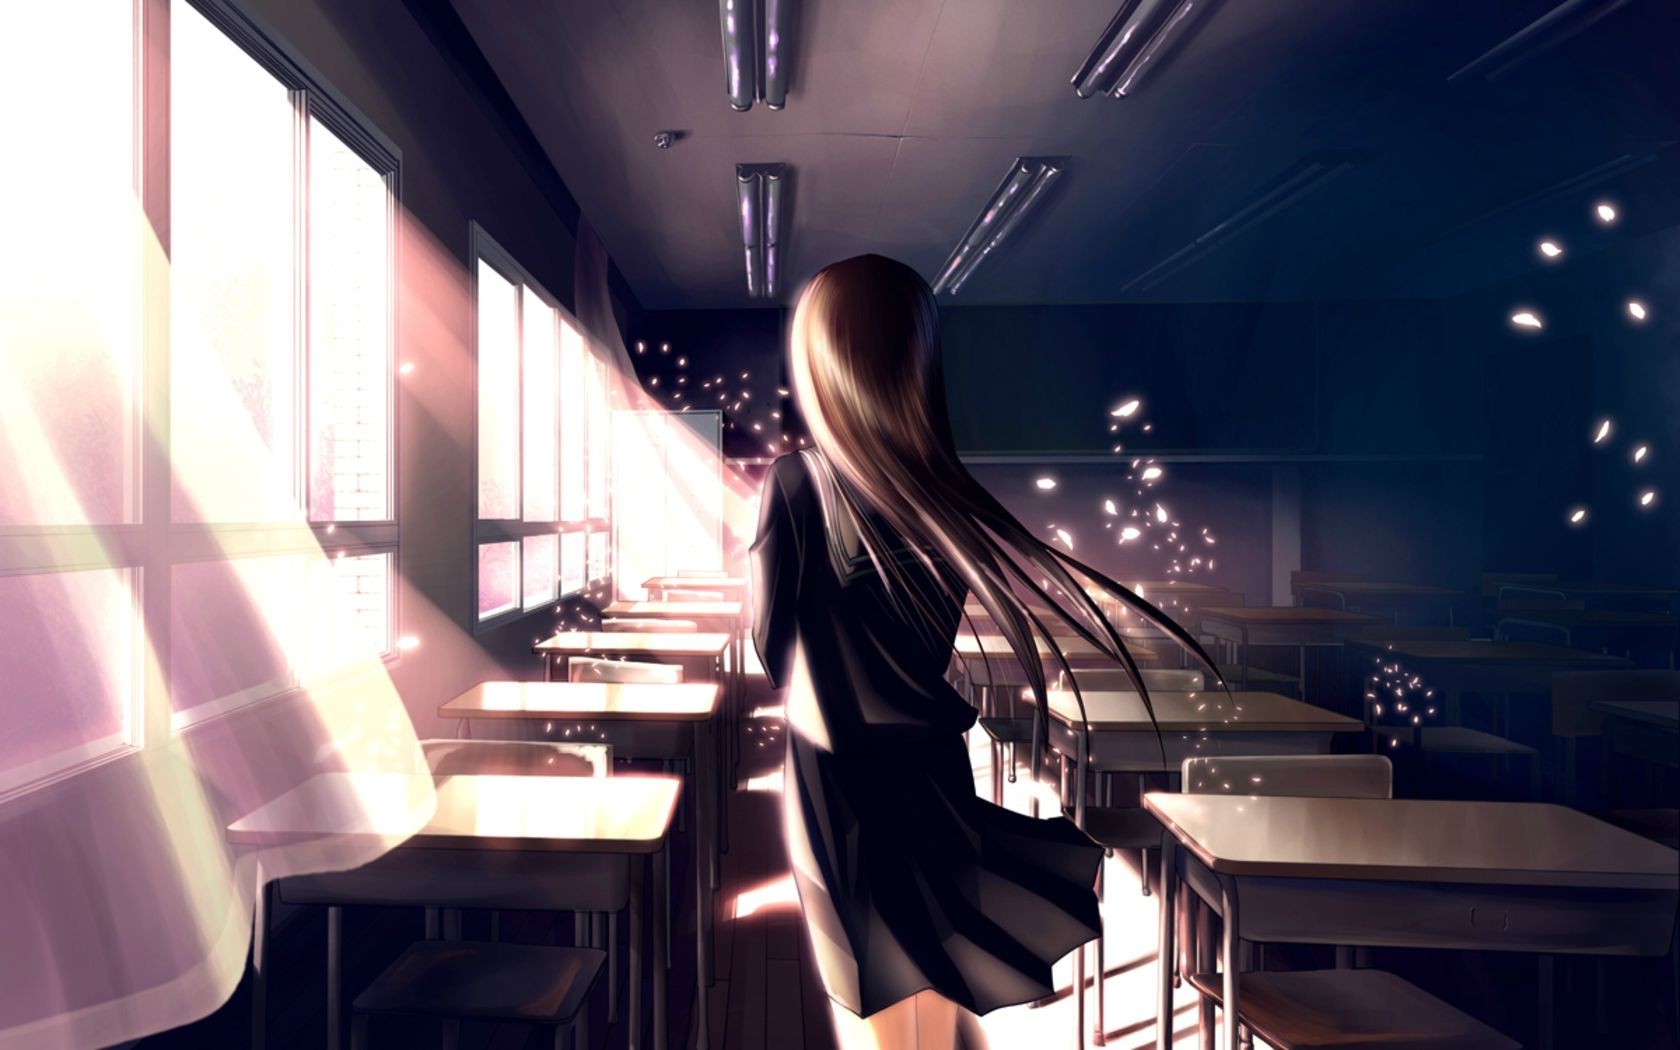 Anime Girl Wallpaper In School - HD Wallpaper 